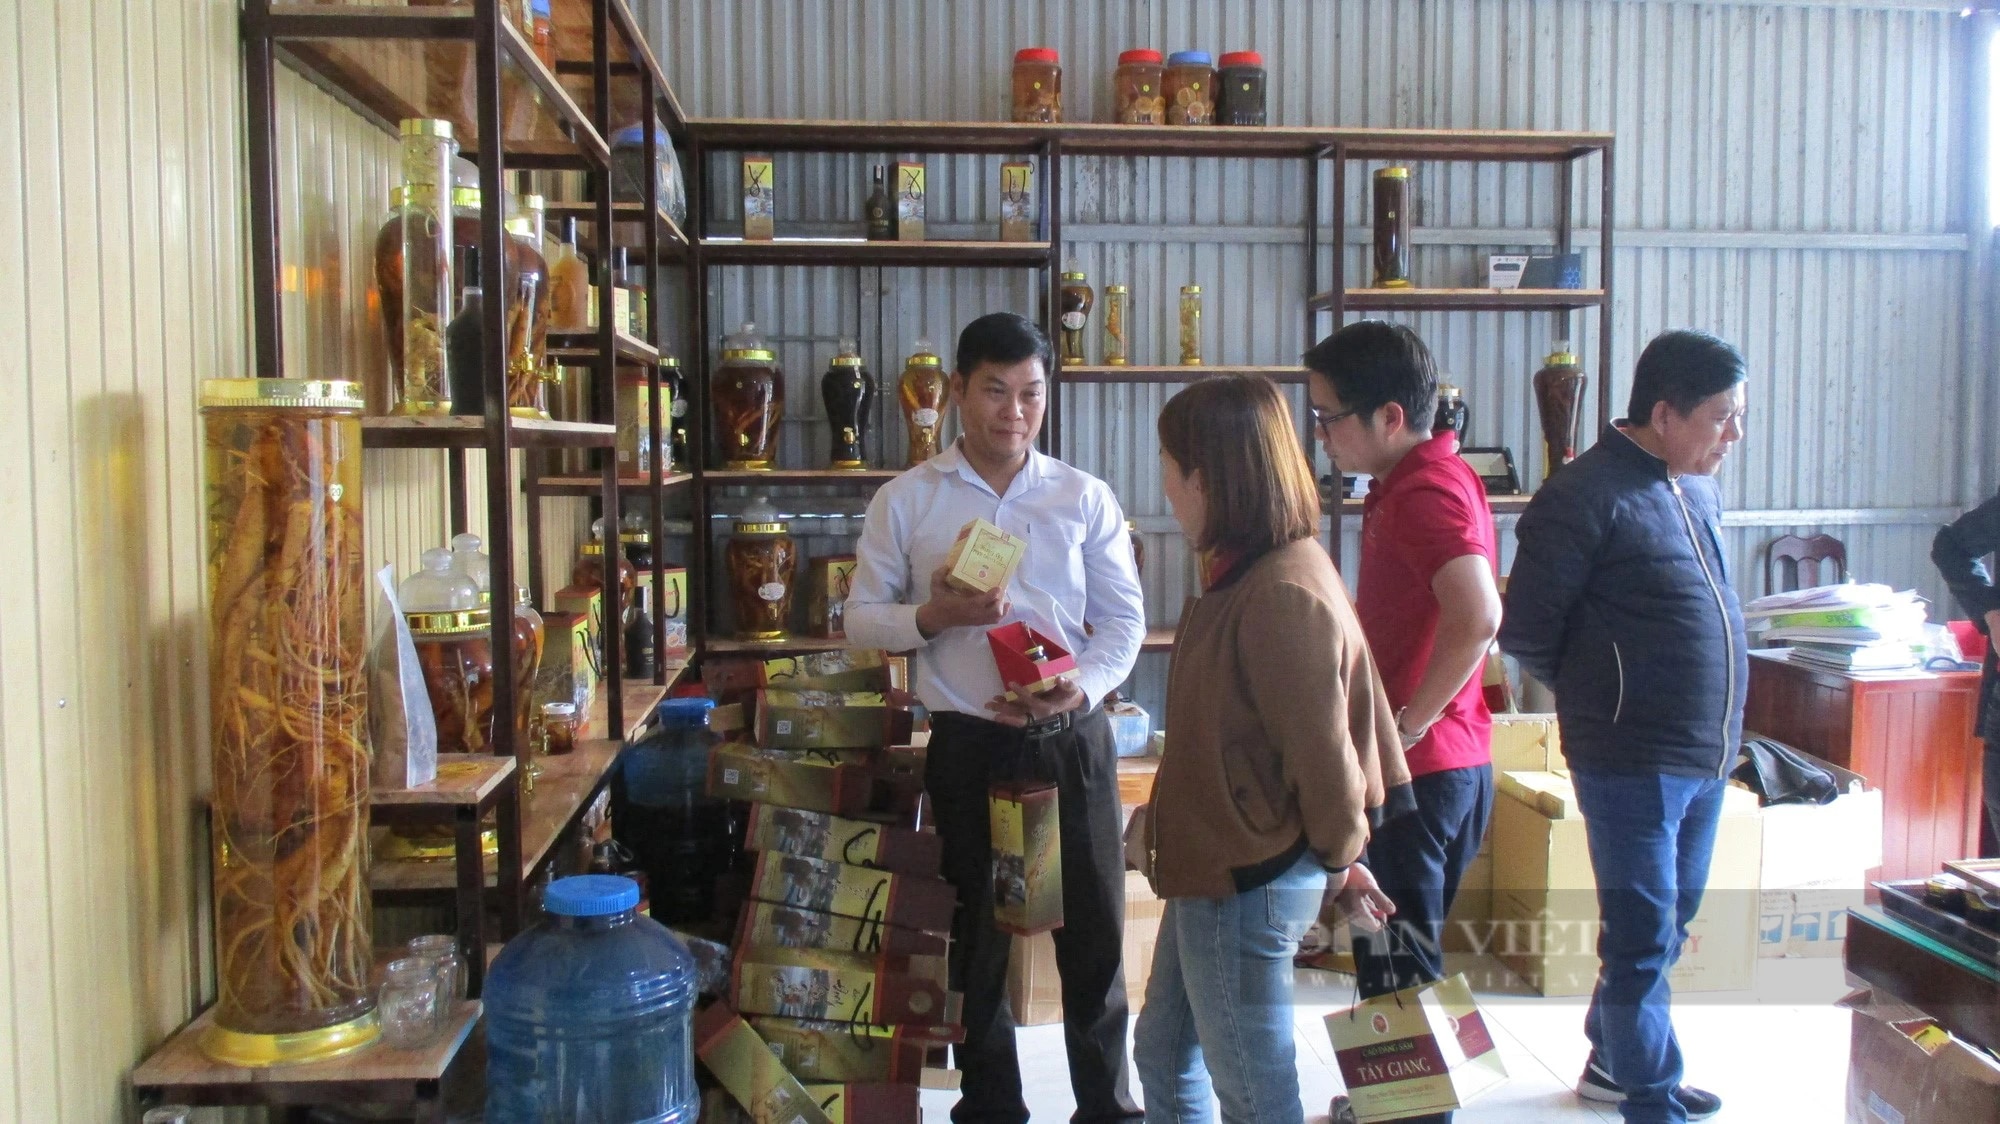 Tăng cường quản lý nhà nước lĩnh vực kinh tế tập thể, Quảng Nam hướng đến phát triển bền vững- Ảnh 4.